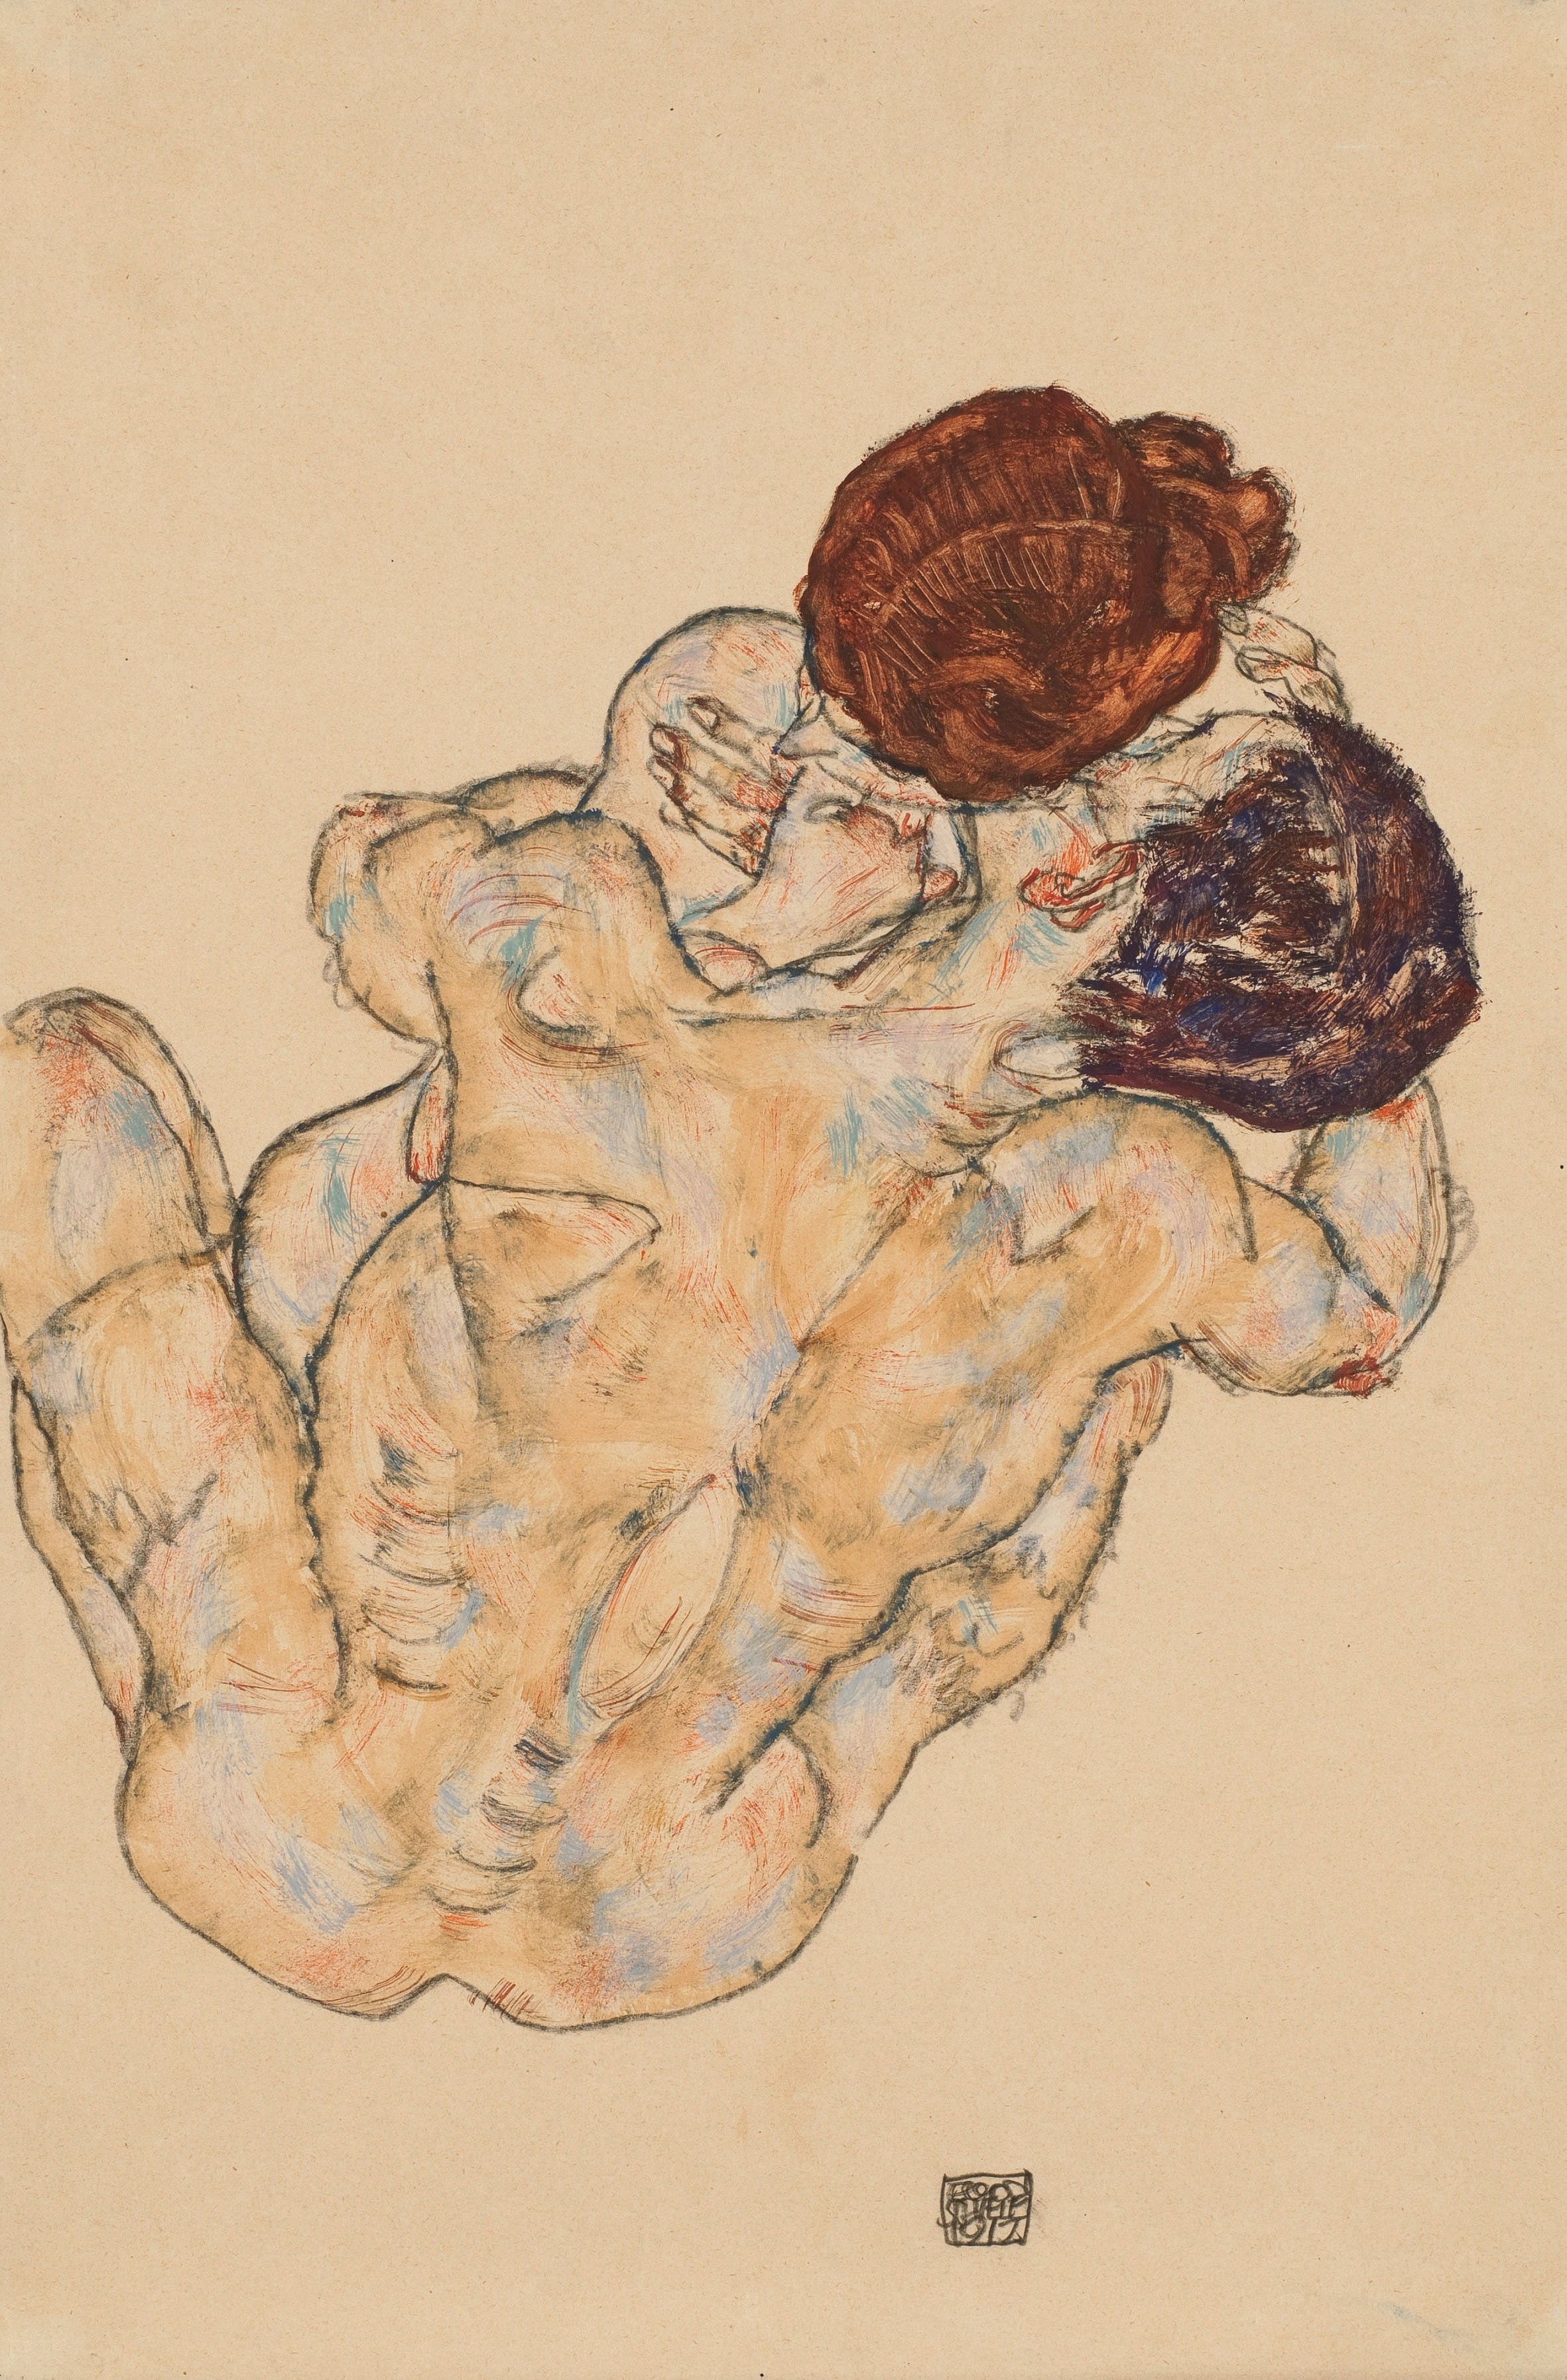 L'Étreinte by Egon Schiele - 1917 - 48.9 x 28.9 cm collection privée